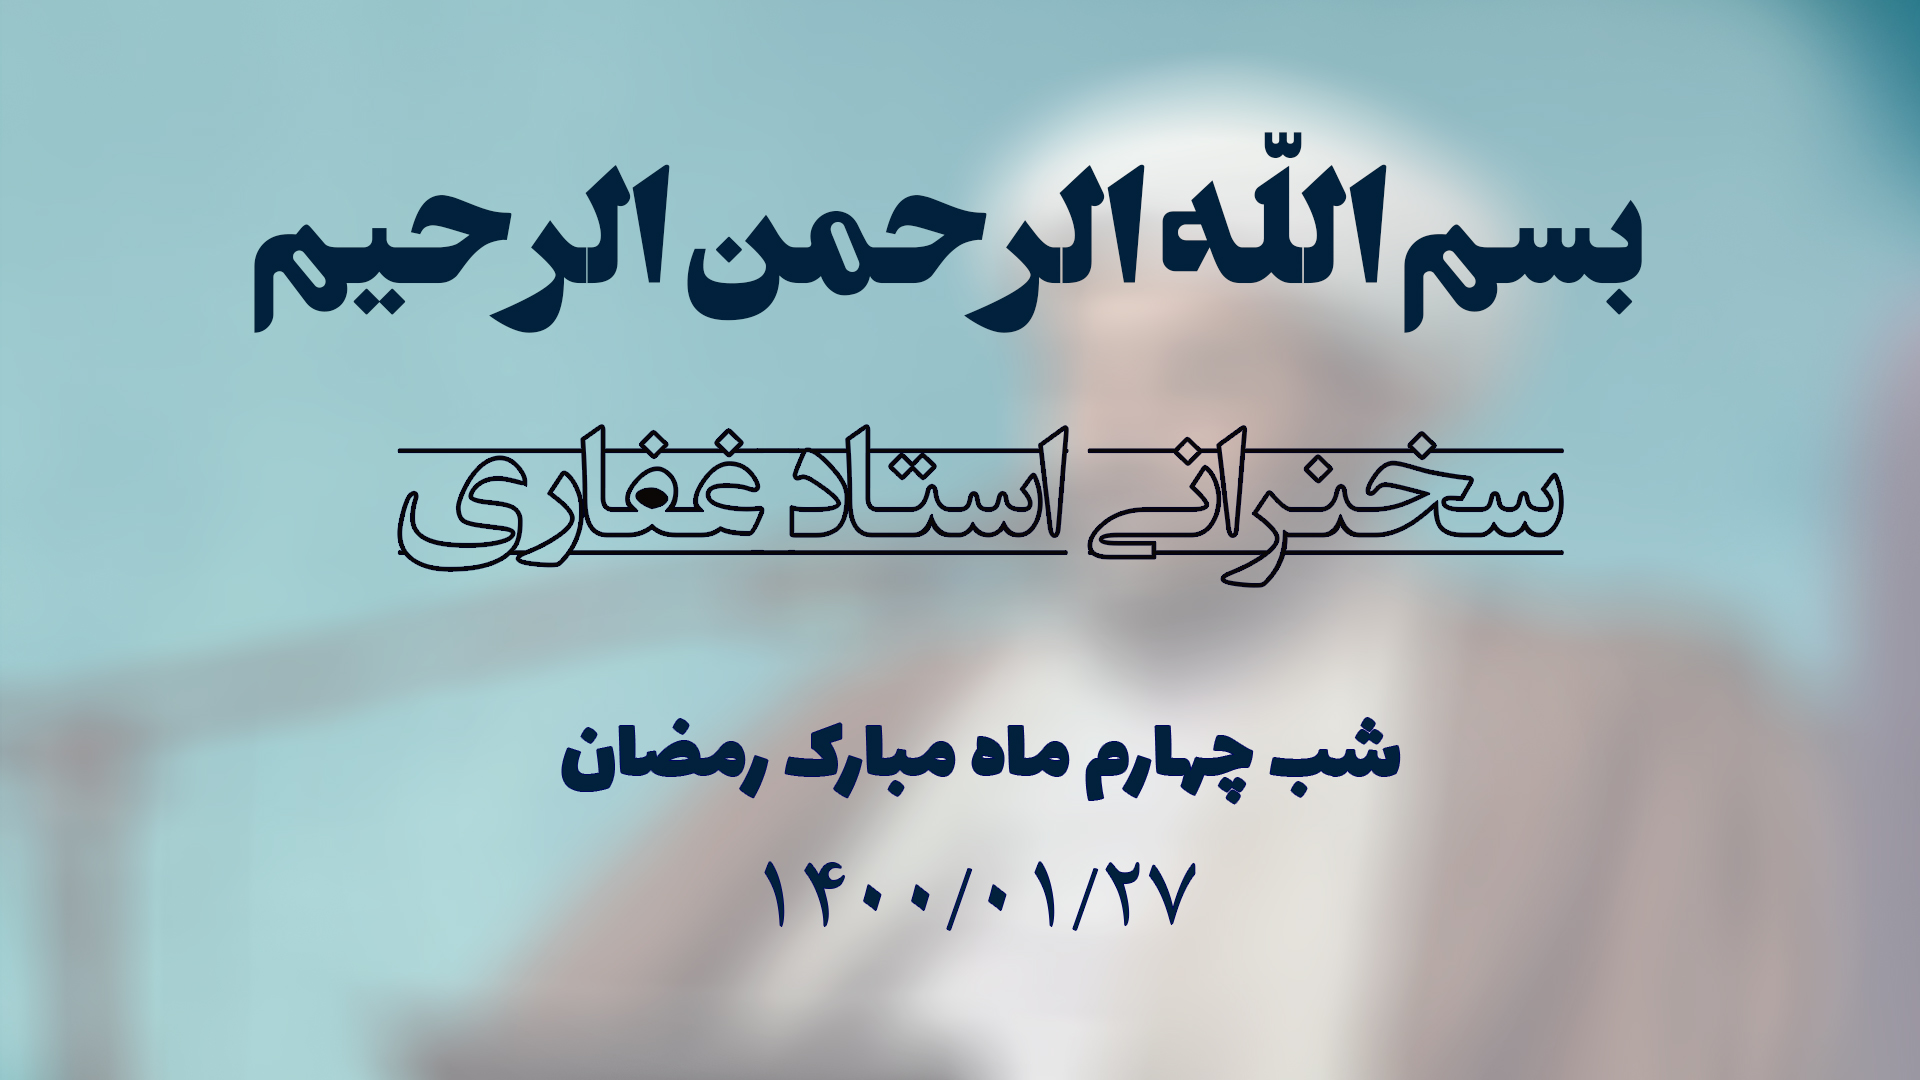 سخنرانی استاد غفاری ، شب چهارم ماه مبارک رمضان 1400/01/27